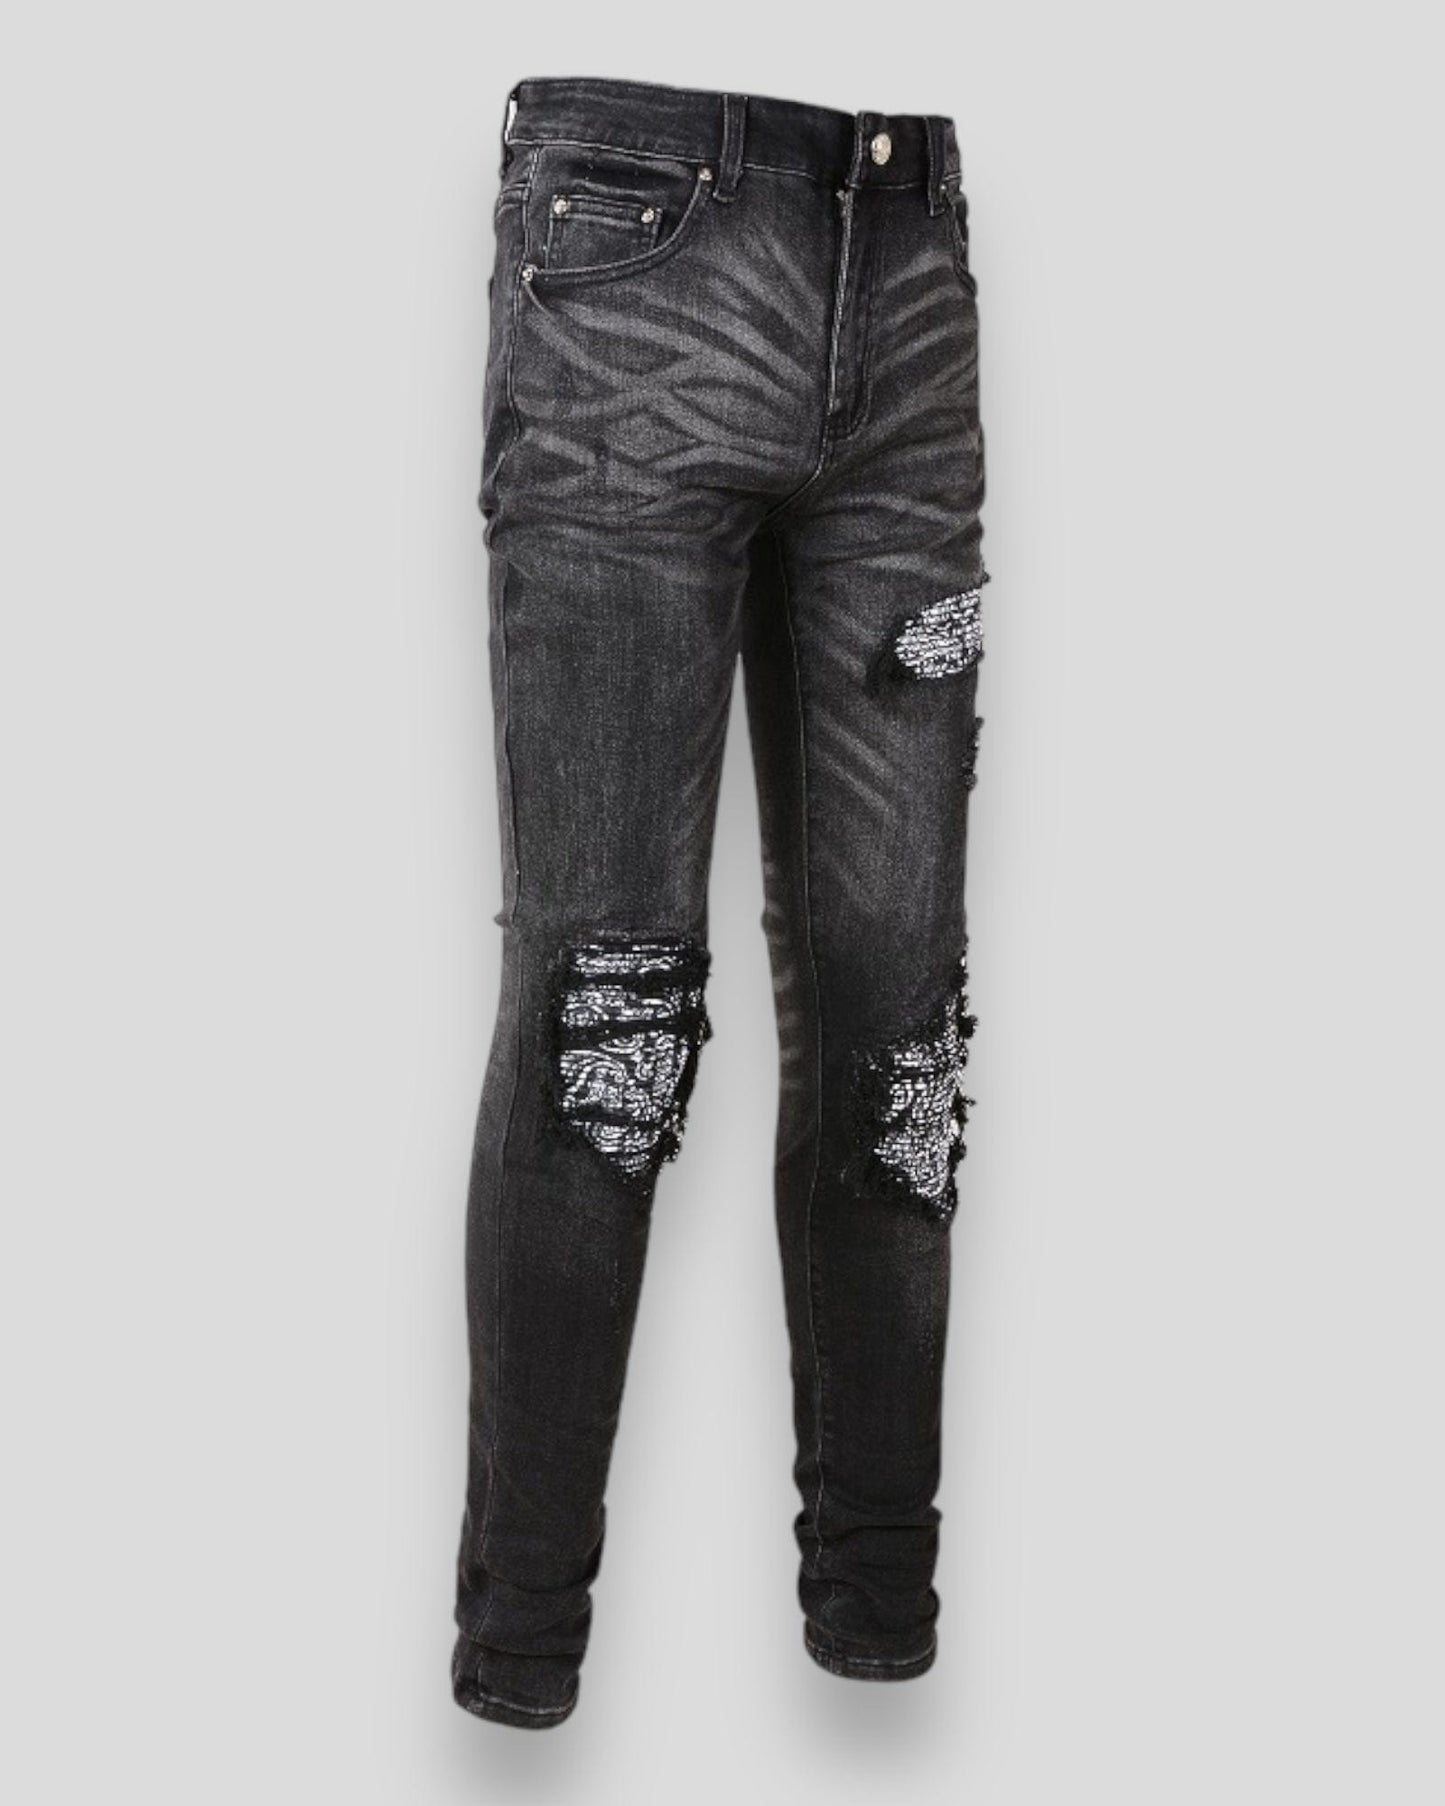 Urbandel pants Urbandel Dark Side Black Skinny Jeans